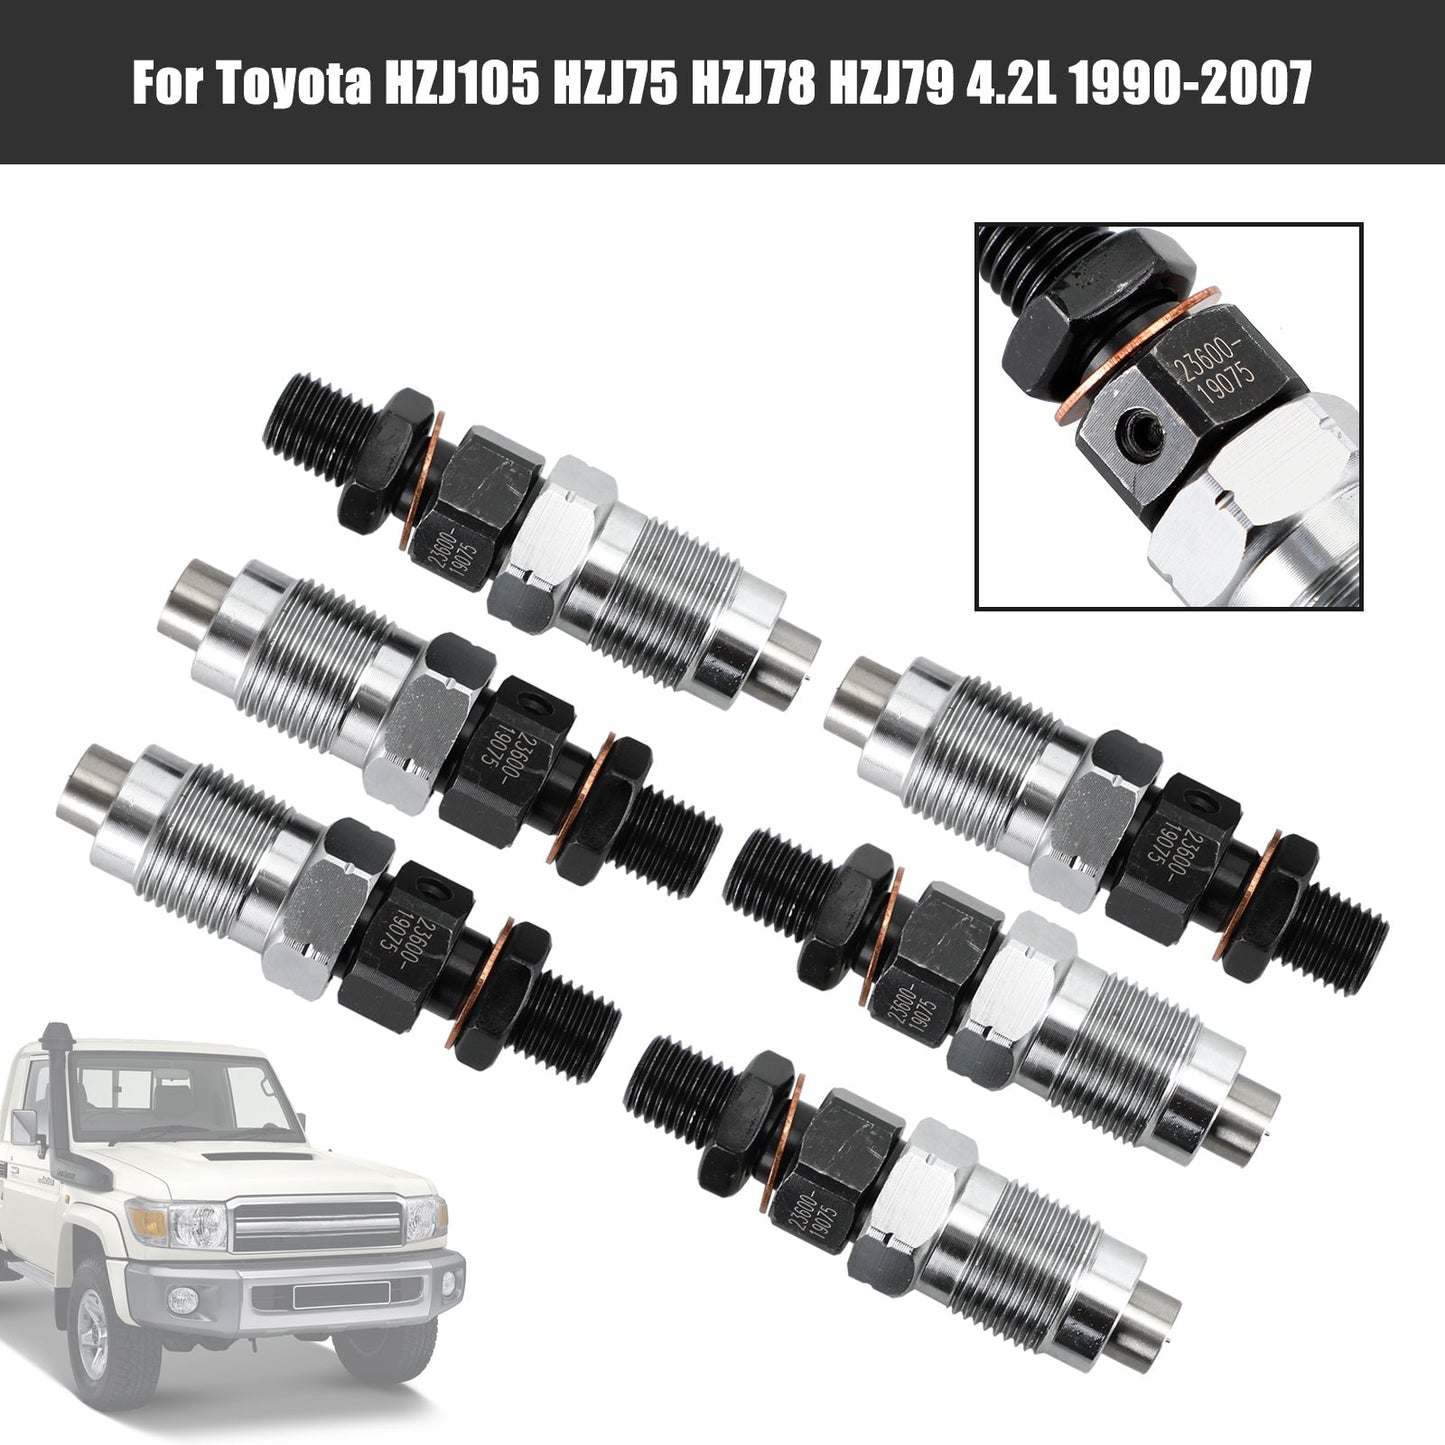 1990-2007 Toyota HZJ105 HZJ75 HZJ78 HZJ79 6PCS Einspritzdüsen 23600-19075 Fedex Express